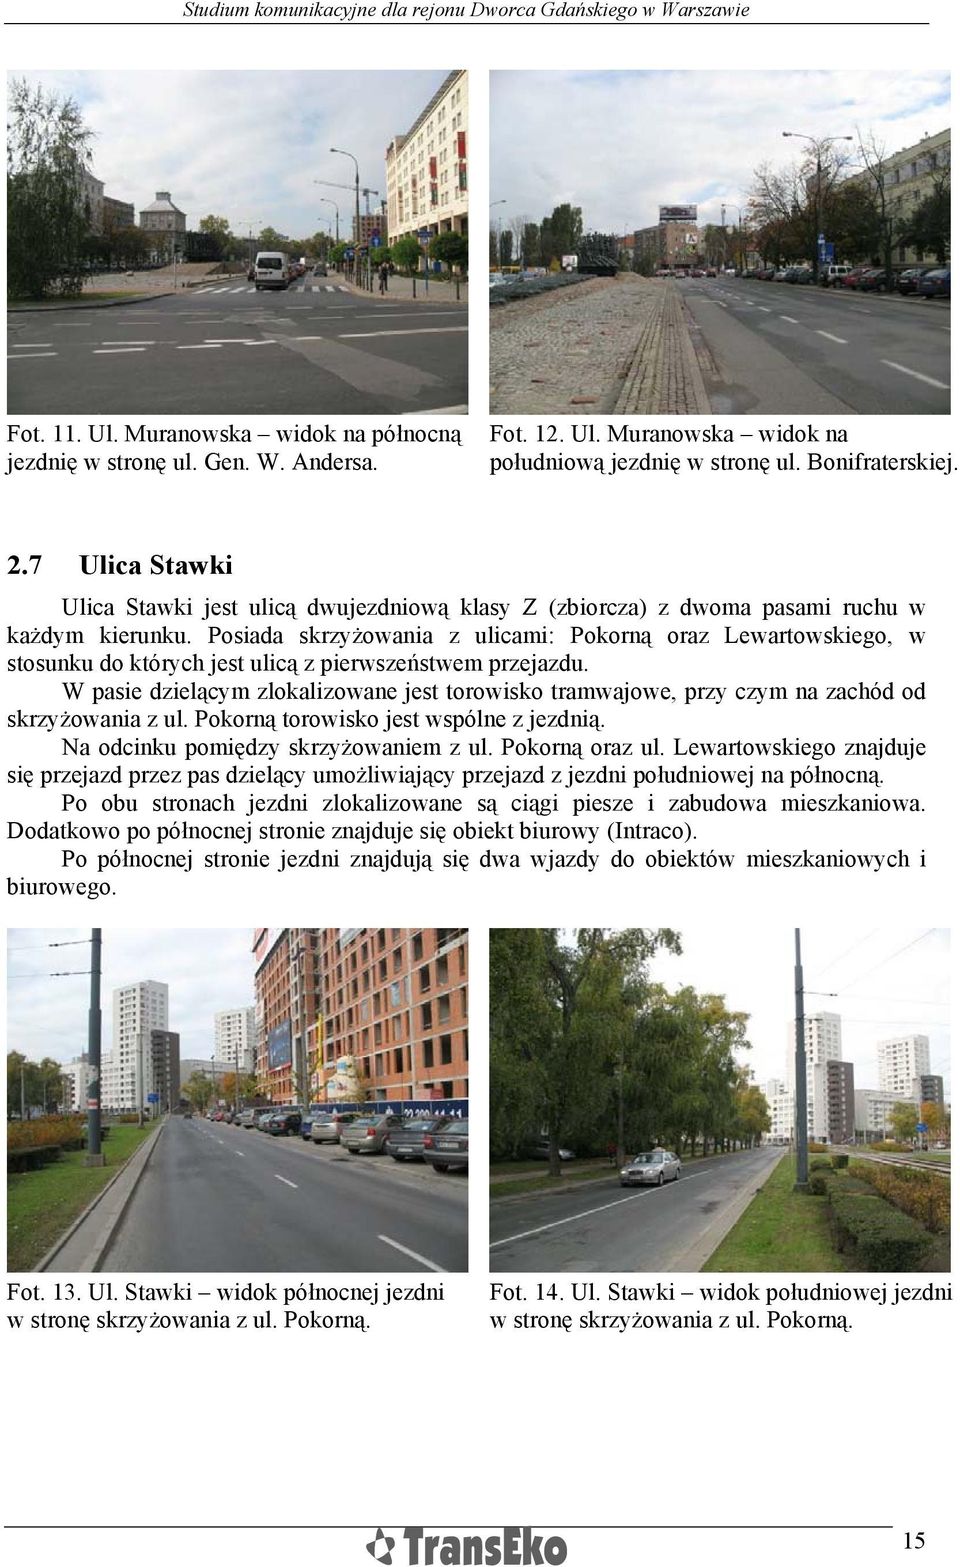 Posiada skrzyżowania z ulicami: Pokorną oraz Lewartowskiego, w stosunku do których jest ulicą z pierwszeństwem przejazdu.